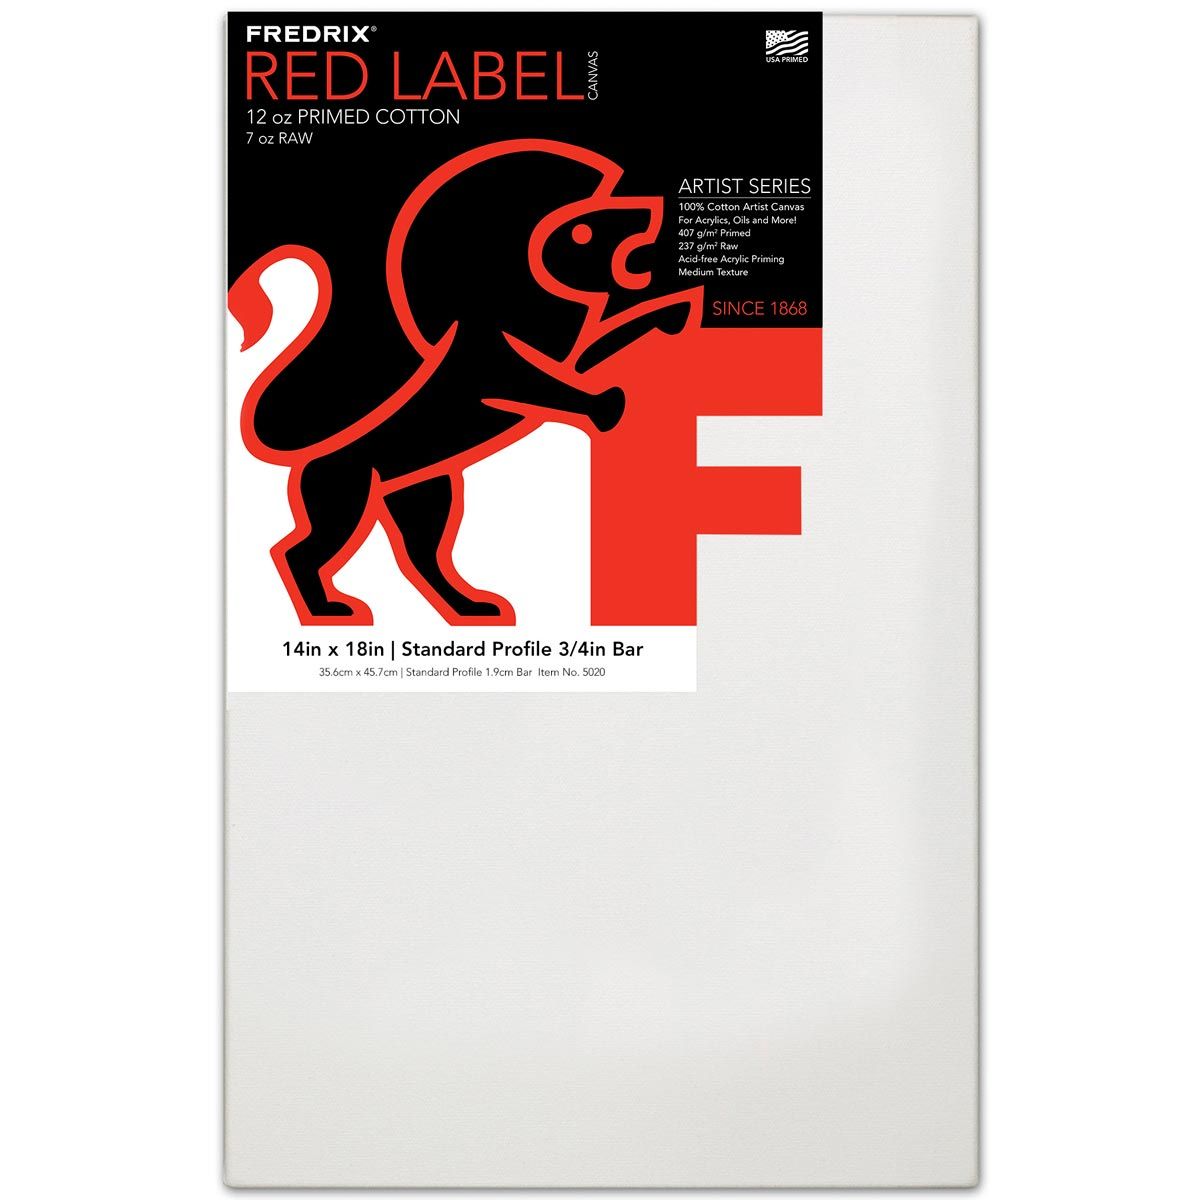 Fredrix Red Label 3/4" Profile Cotton Canvas 14" x 18"